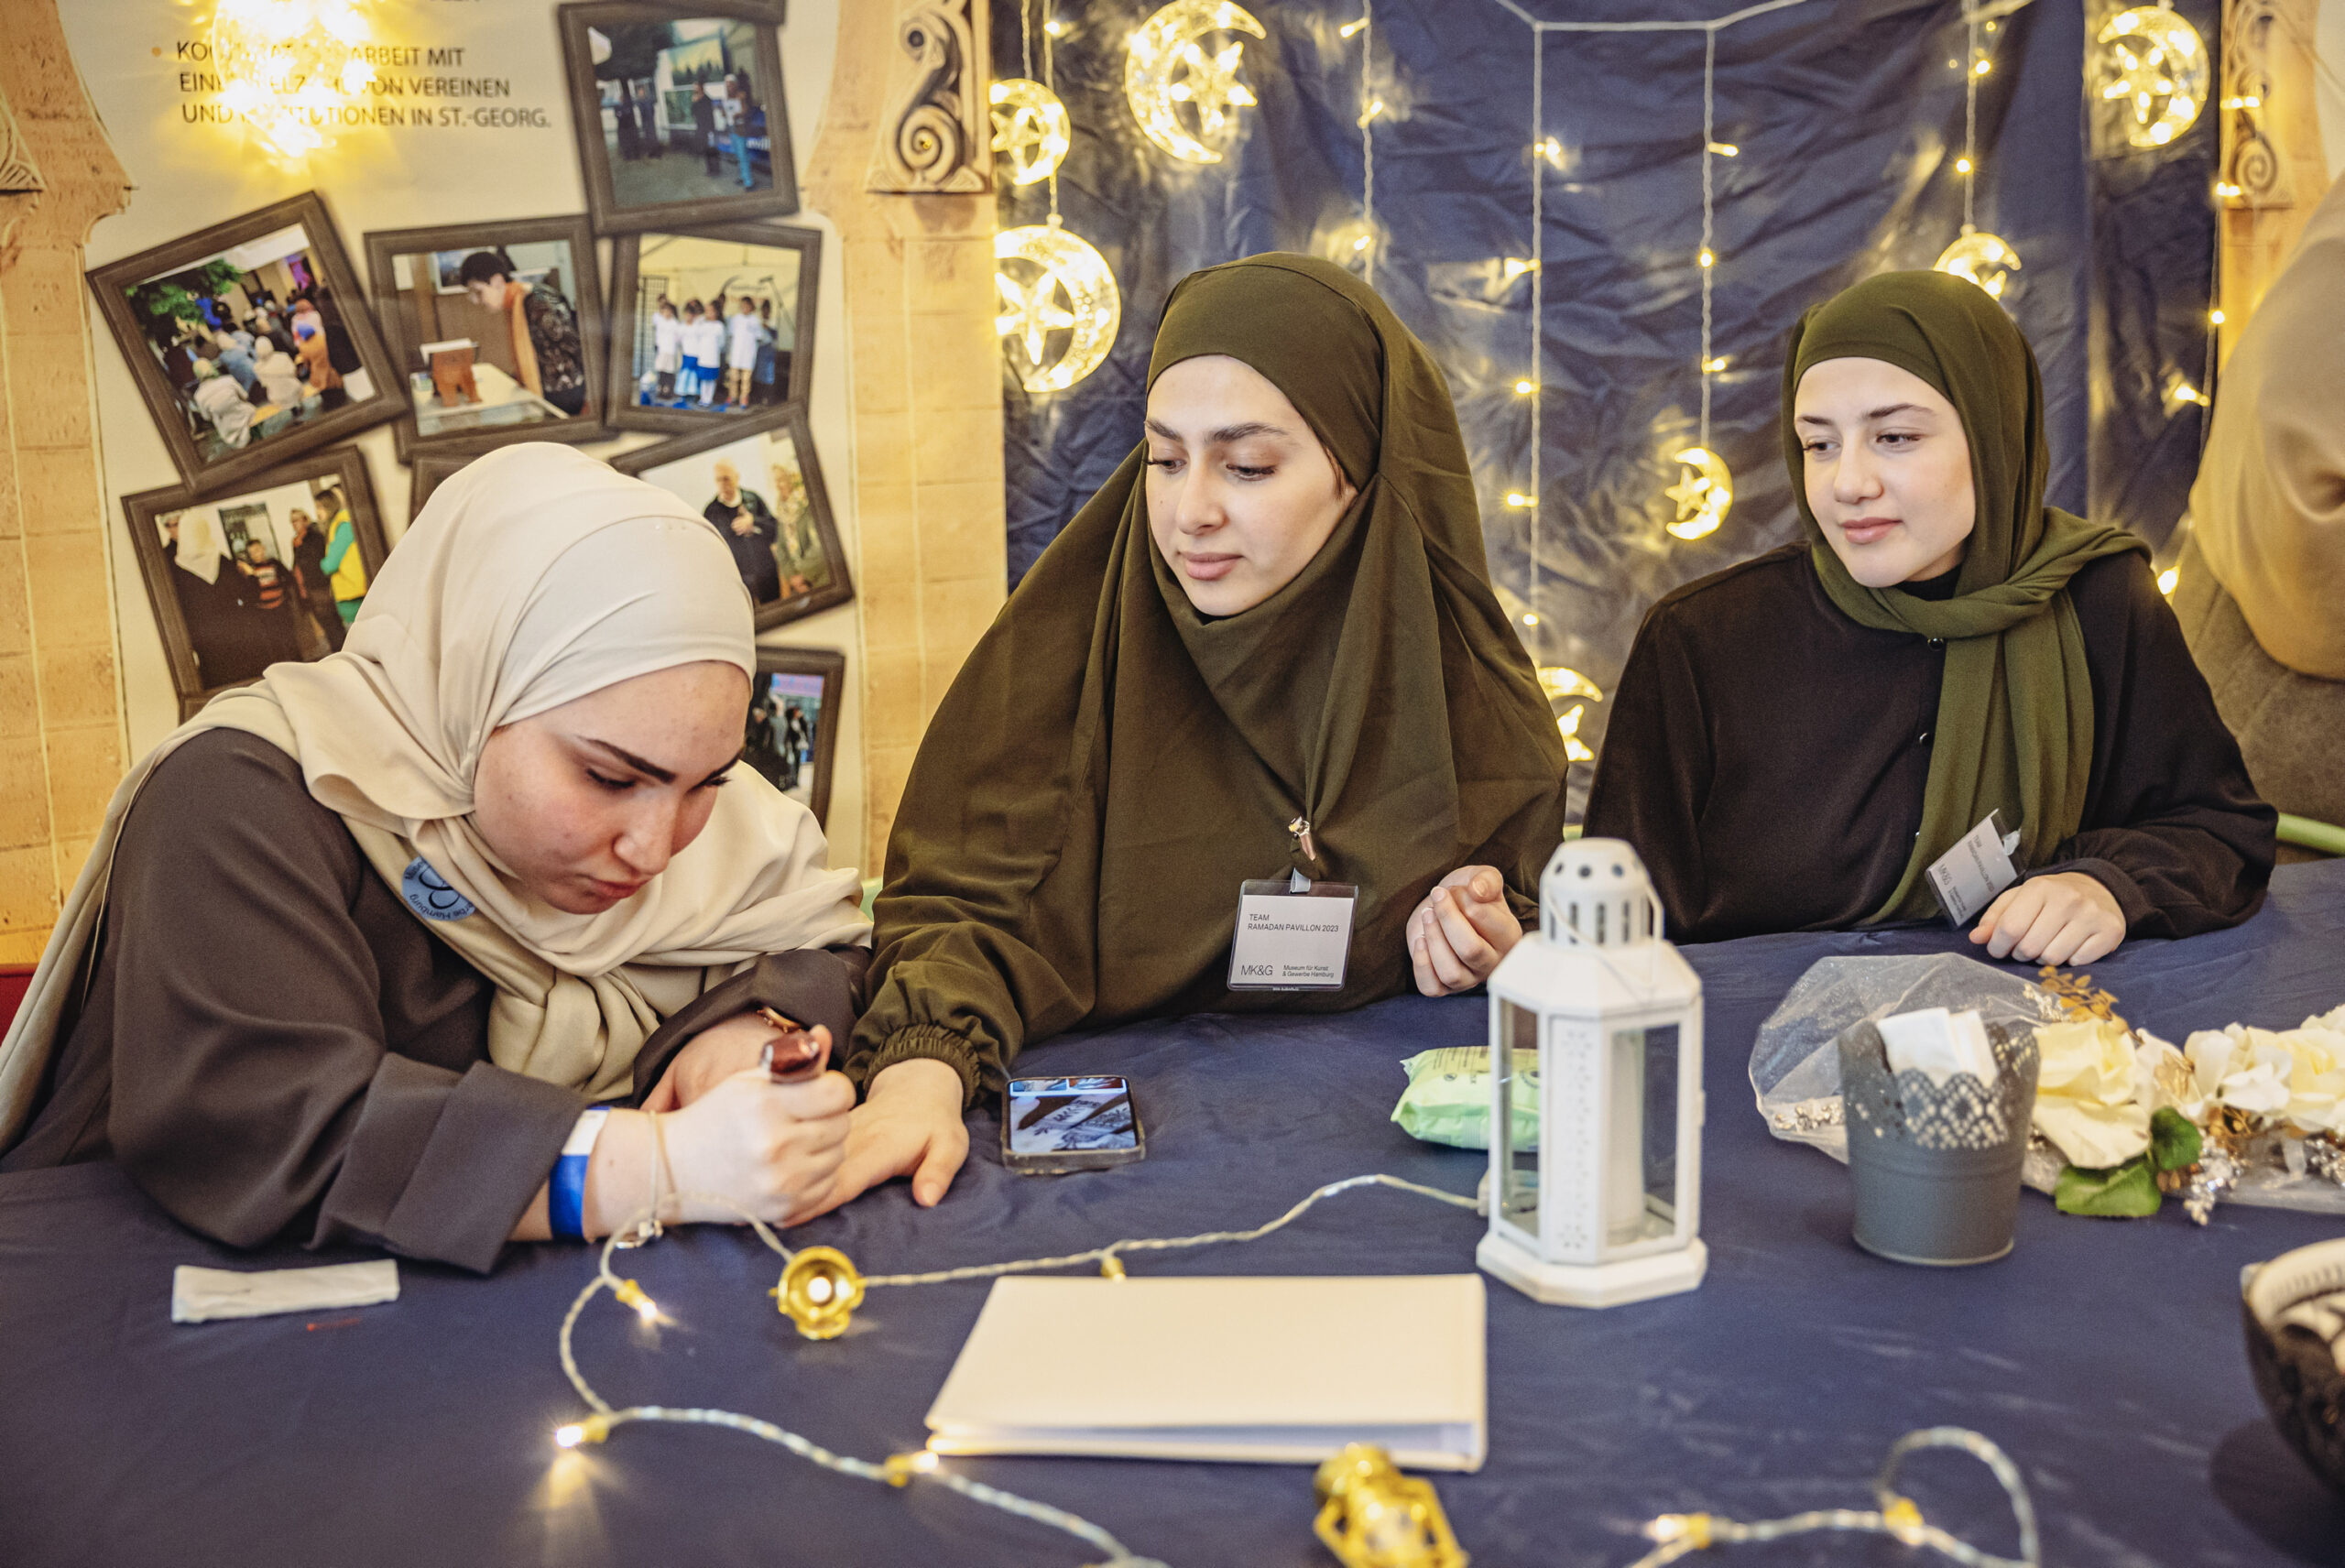 Die Mädchen vom Jugendtreff malen sich gegenseitig Henna auf die Hände. Außerdem bieten sie Hijab-Anproben und Poetry Slam an.